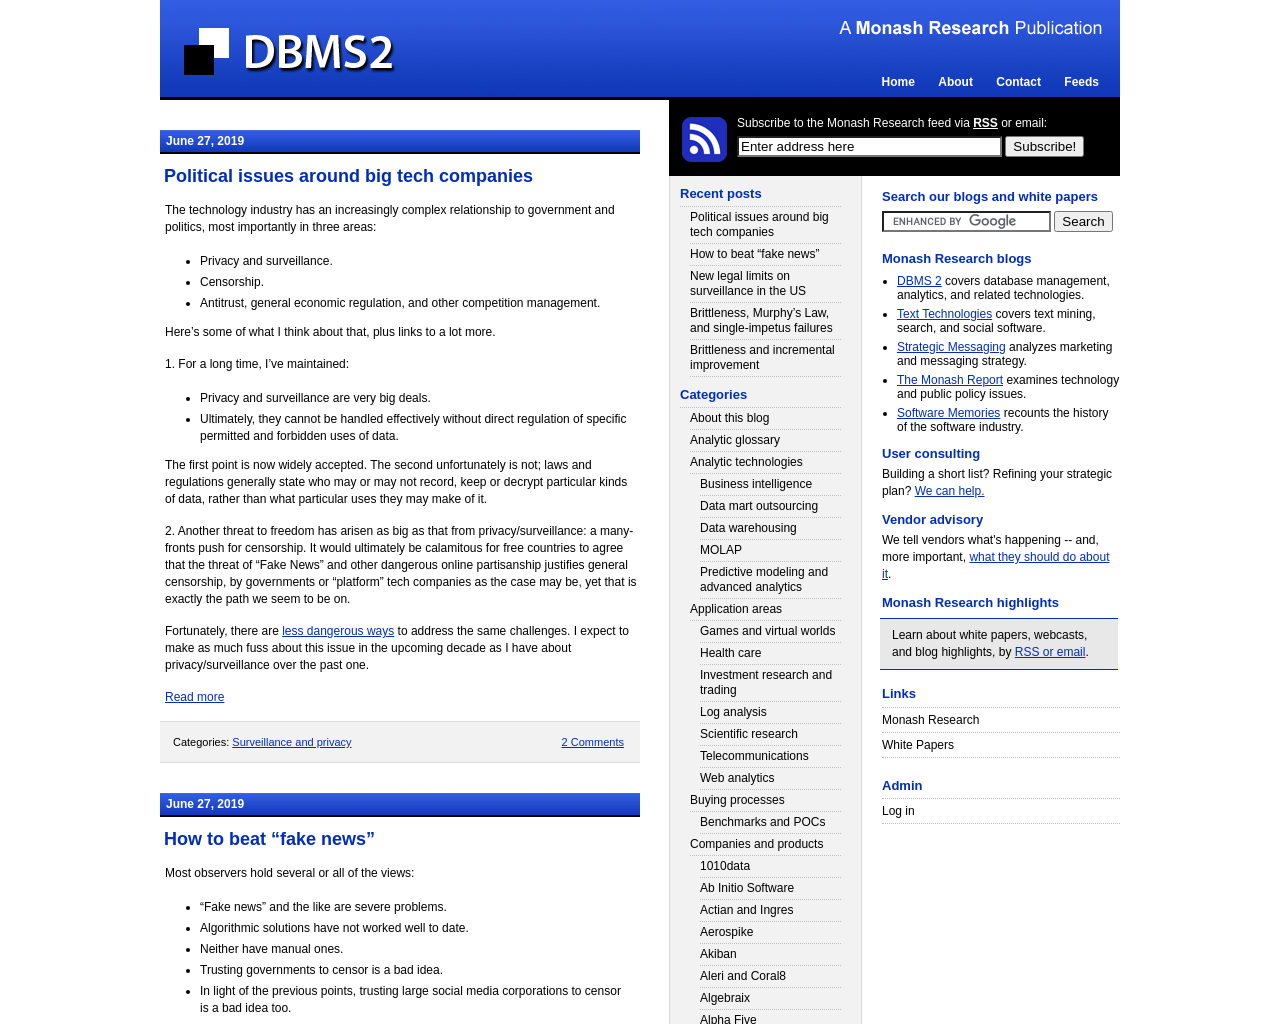 dbms2.com